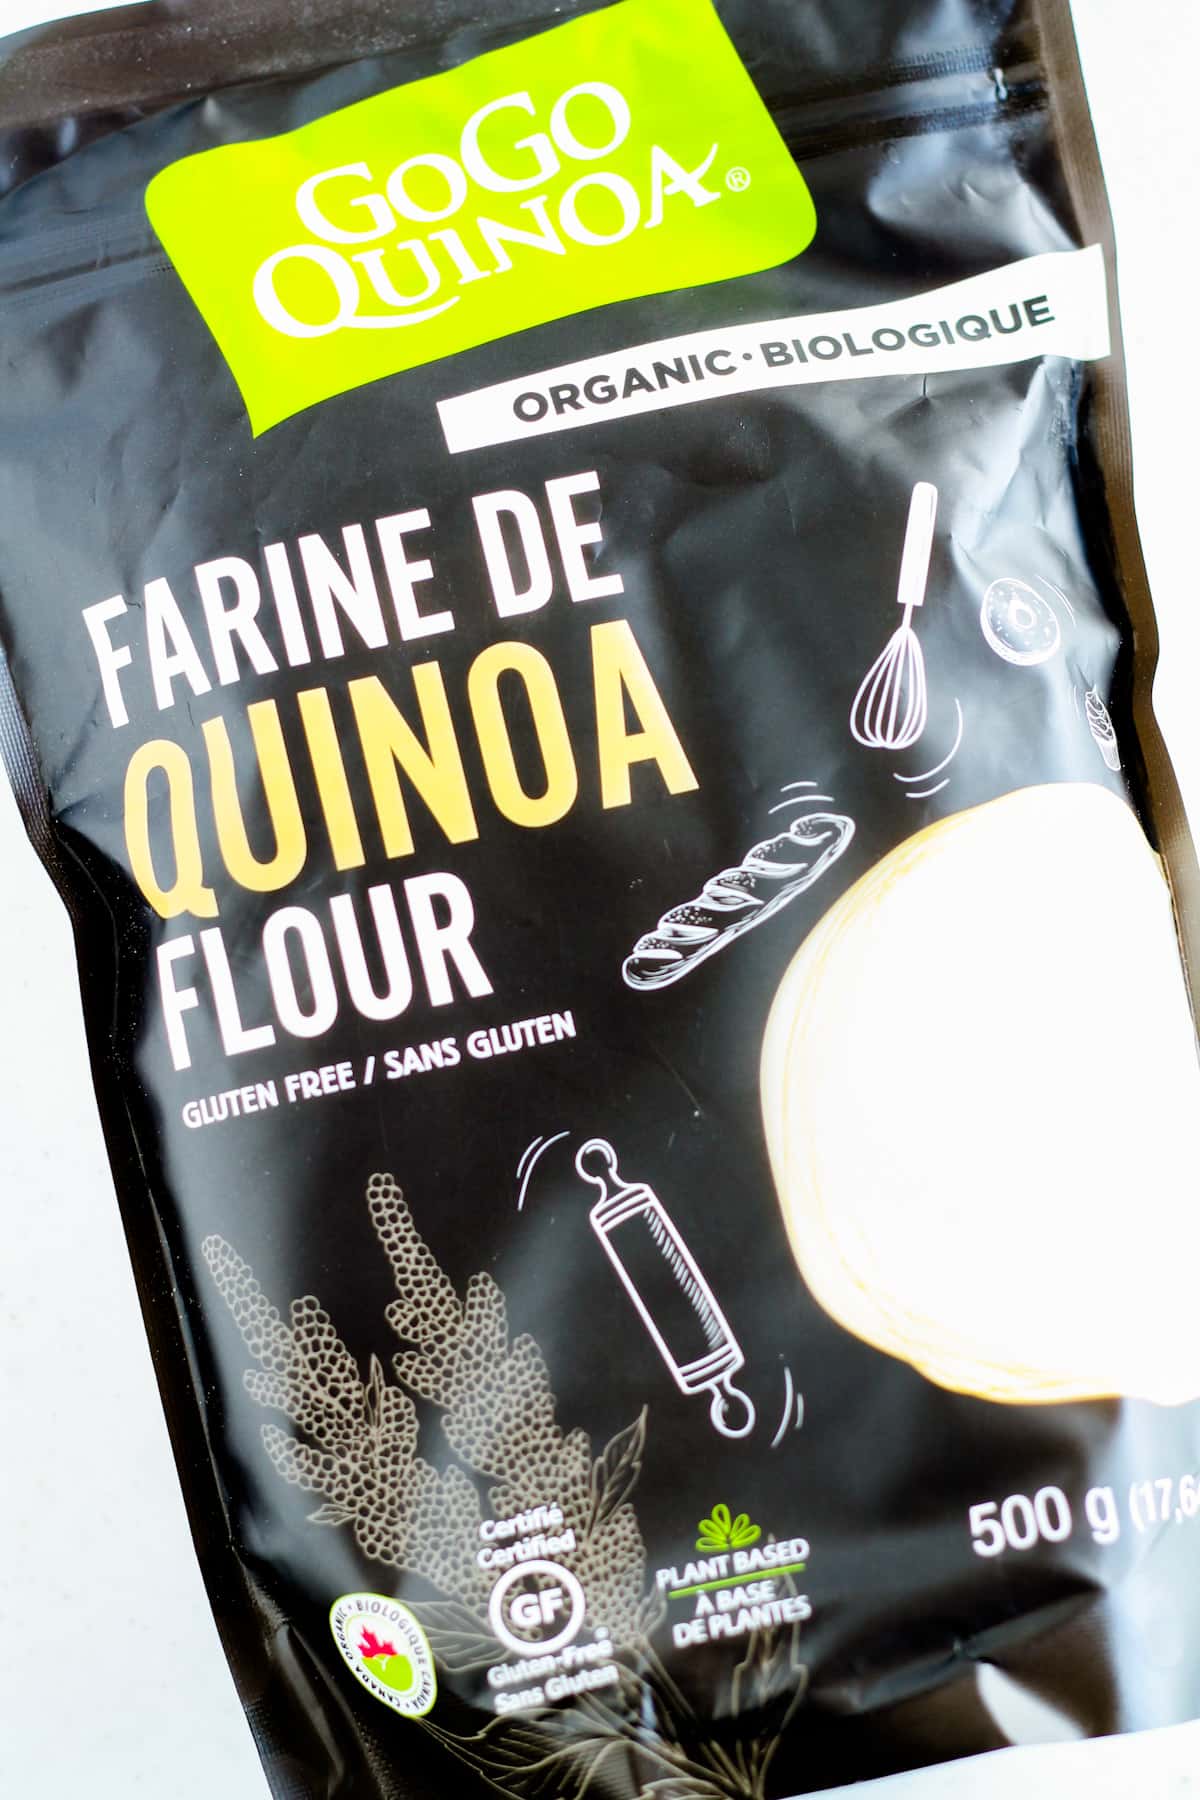 A bag of quinoa flour.